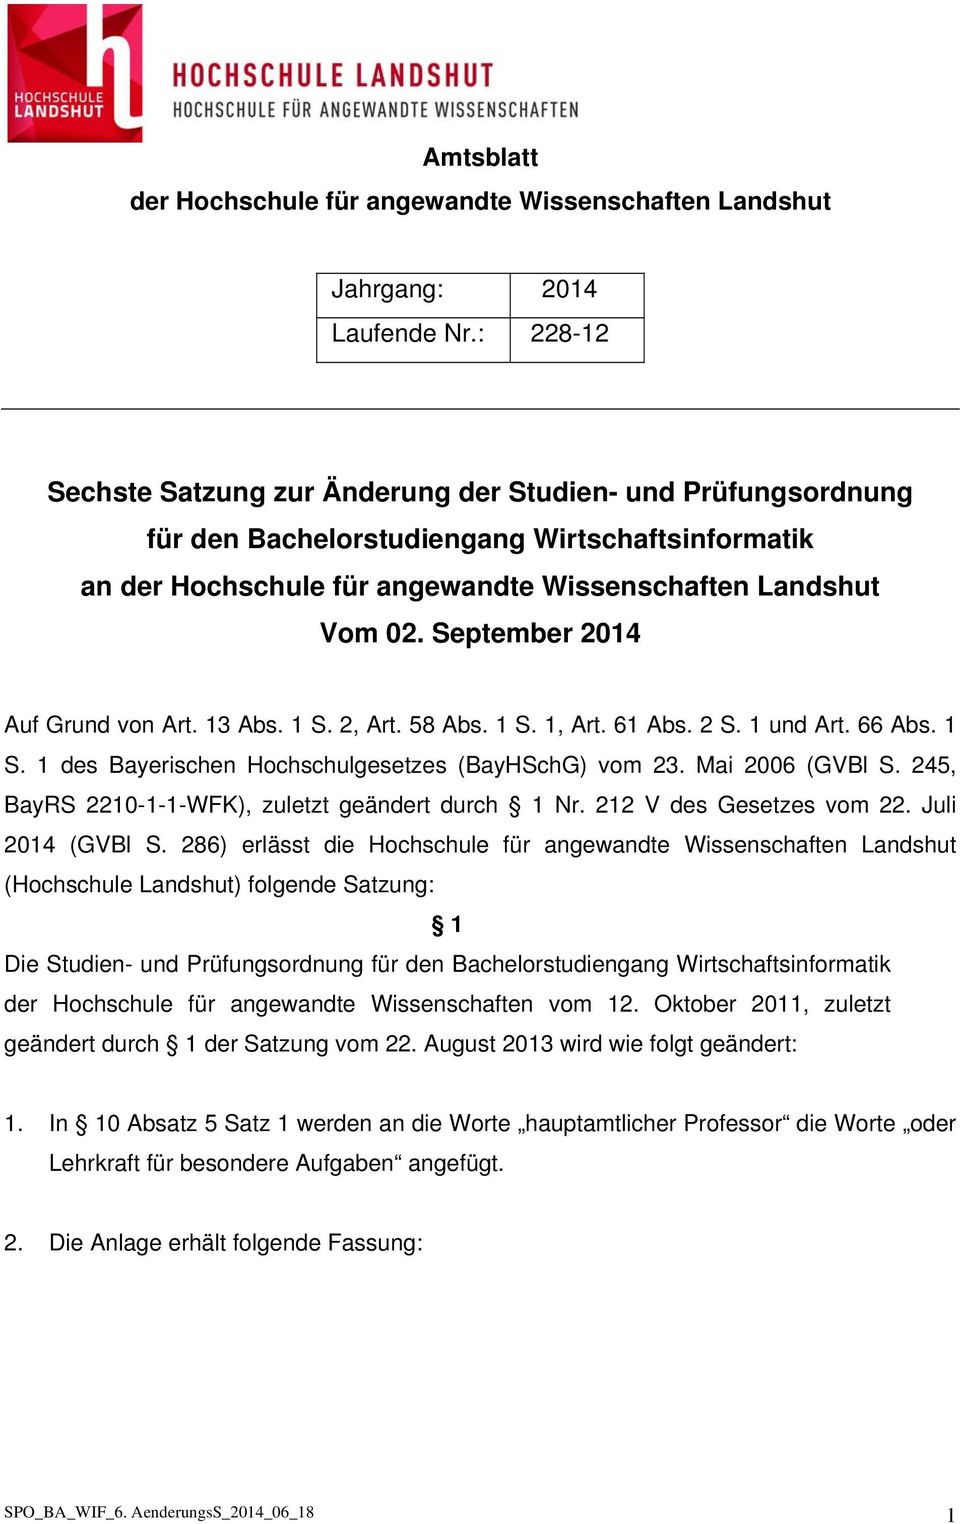 September 2014 Auf Grund von Art. 13 Abs. 1 S. 2, Art. 58 Abs. 1 S. 1, Art. 61 Abs. 2 S. 1 und Art. 66 Abs. 1 S. 1 des Bayerischen Hochschulgesetzes (BayHSchG) vom 23. Mai 2006 (GVBl S.